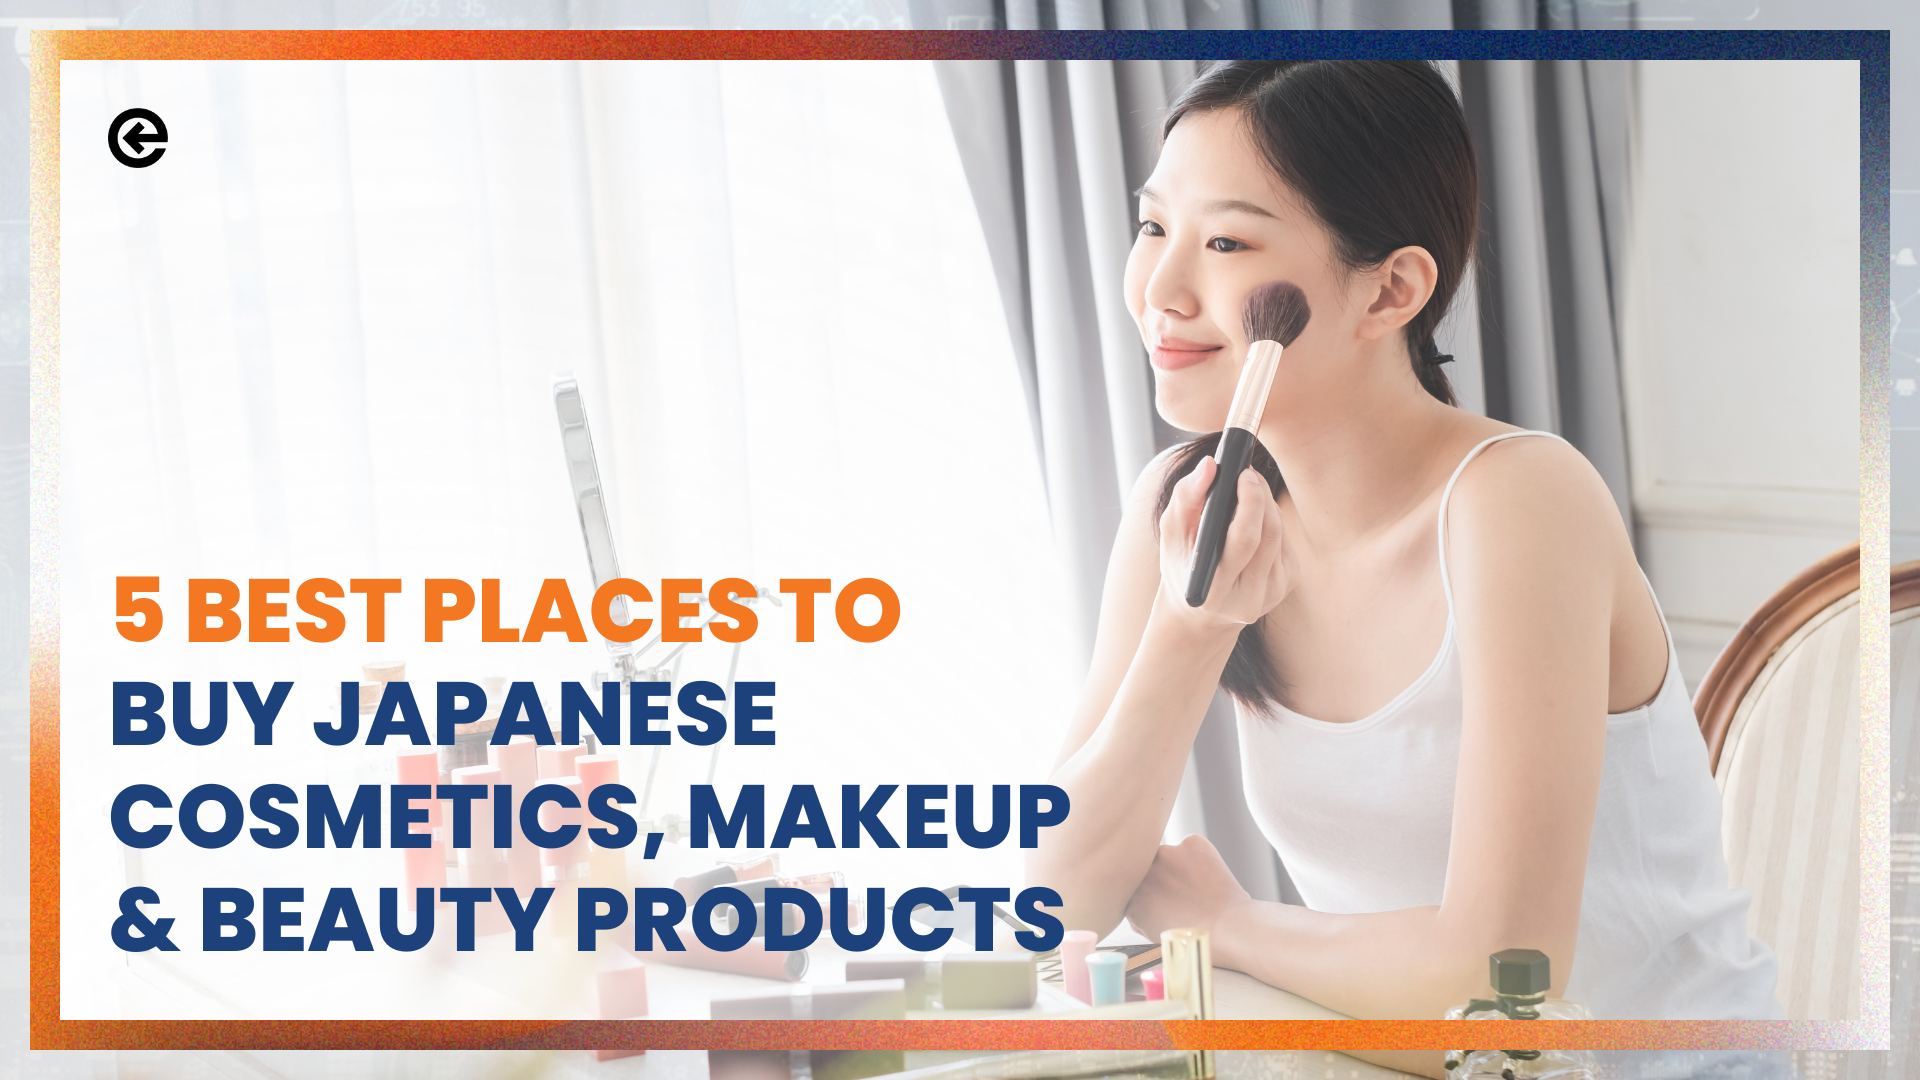 일본 화장품, 메이크업, 뷰티 제품을 구매할 수 있는 5가지 최고의 장소